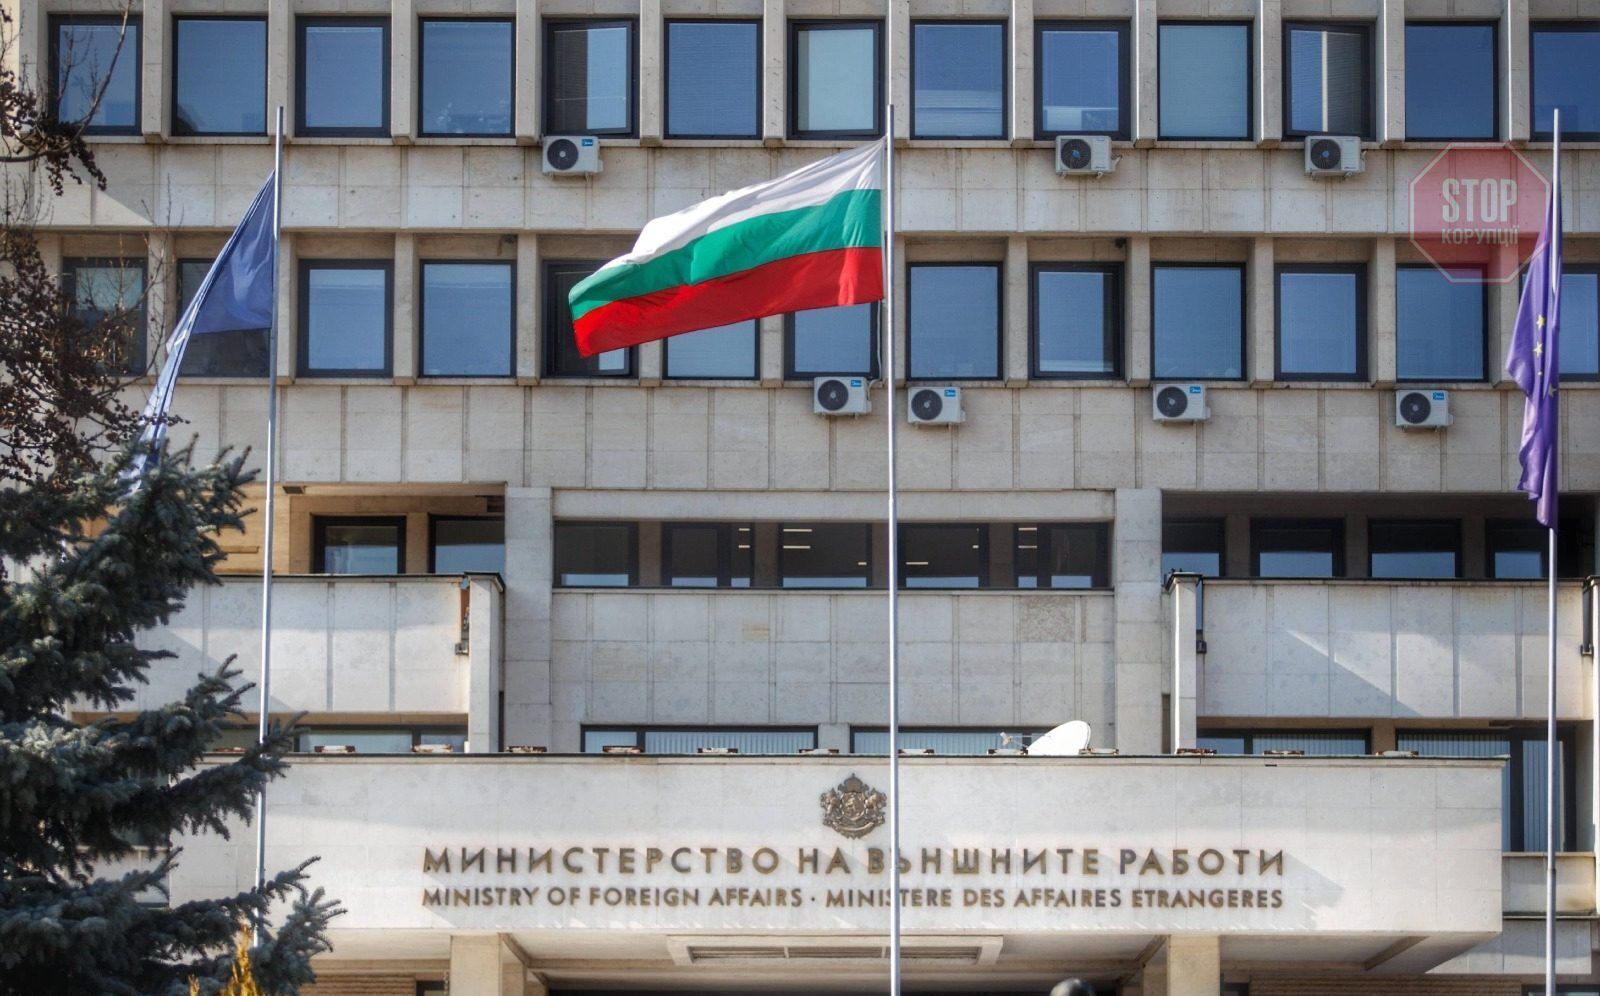  Міністерство закордонних справ Болгарії Фото: сайт МЗС Болгарії